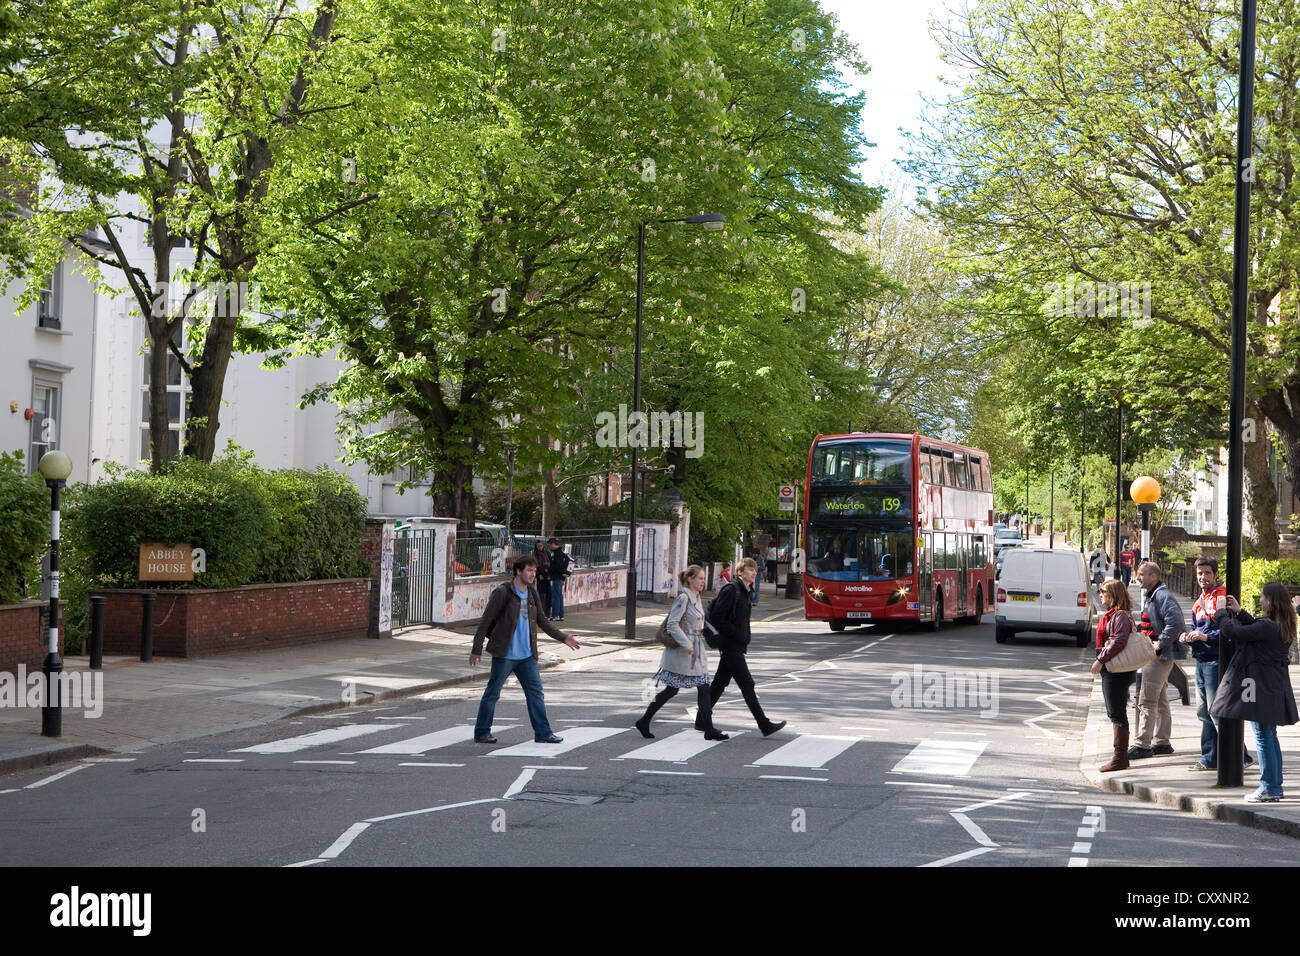 Abbey Road, Touristen auf den bekannten Zebrastreifen berühmt geworden durch die Beatles, London, England, Vereinigtes Königreich, Europa Stockfoto